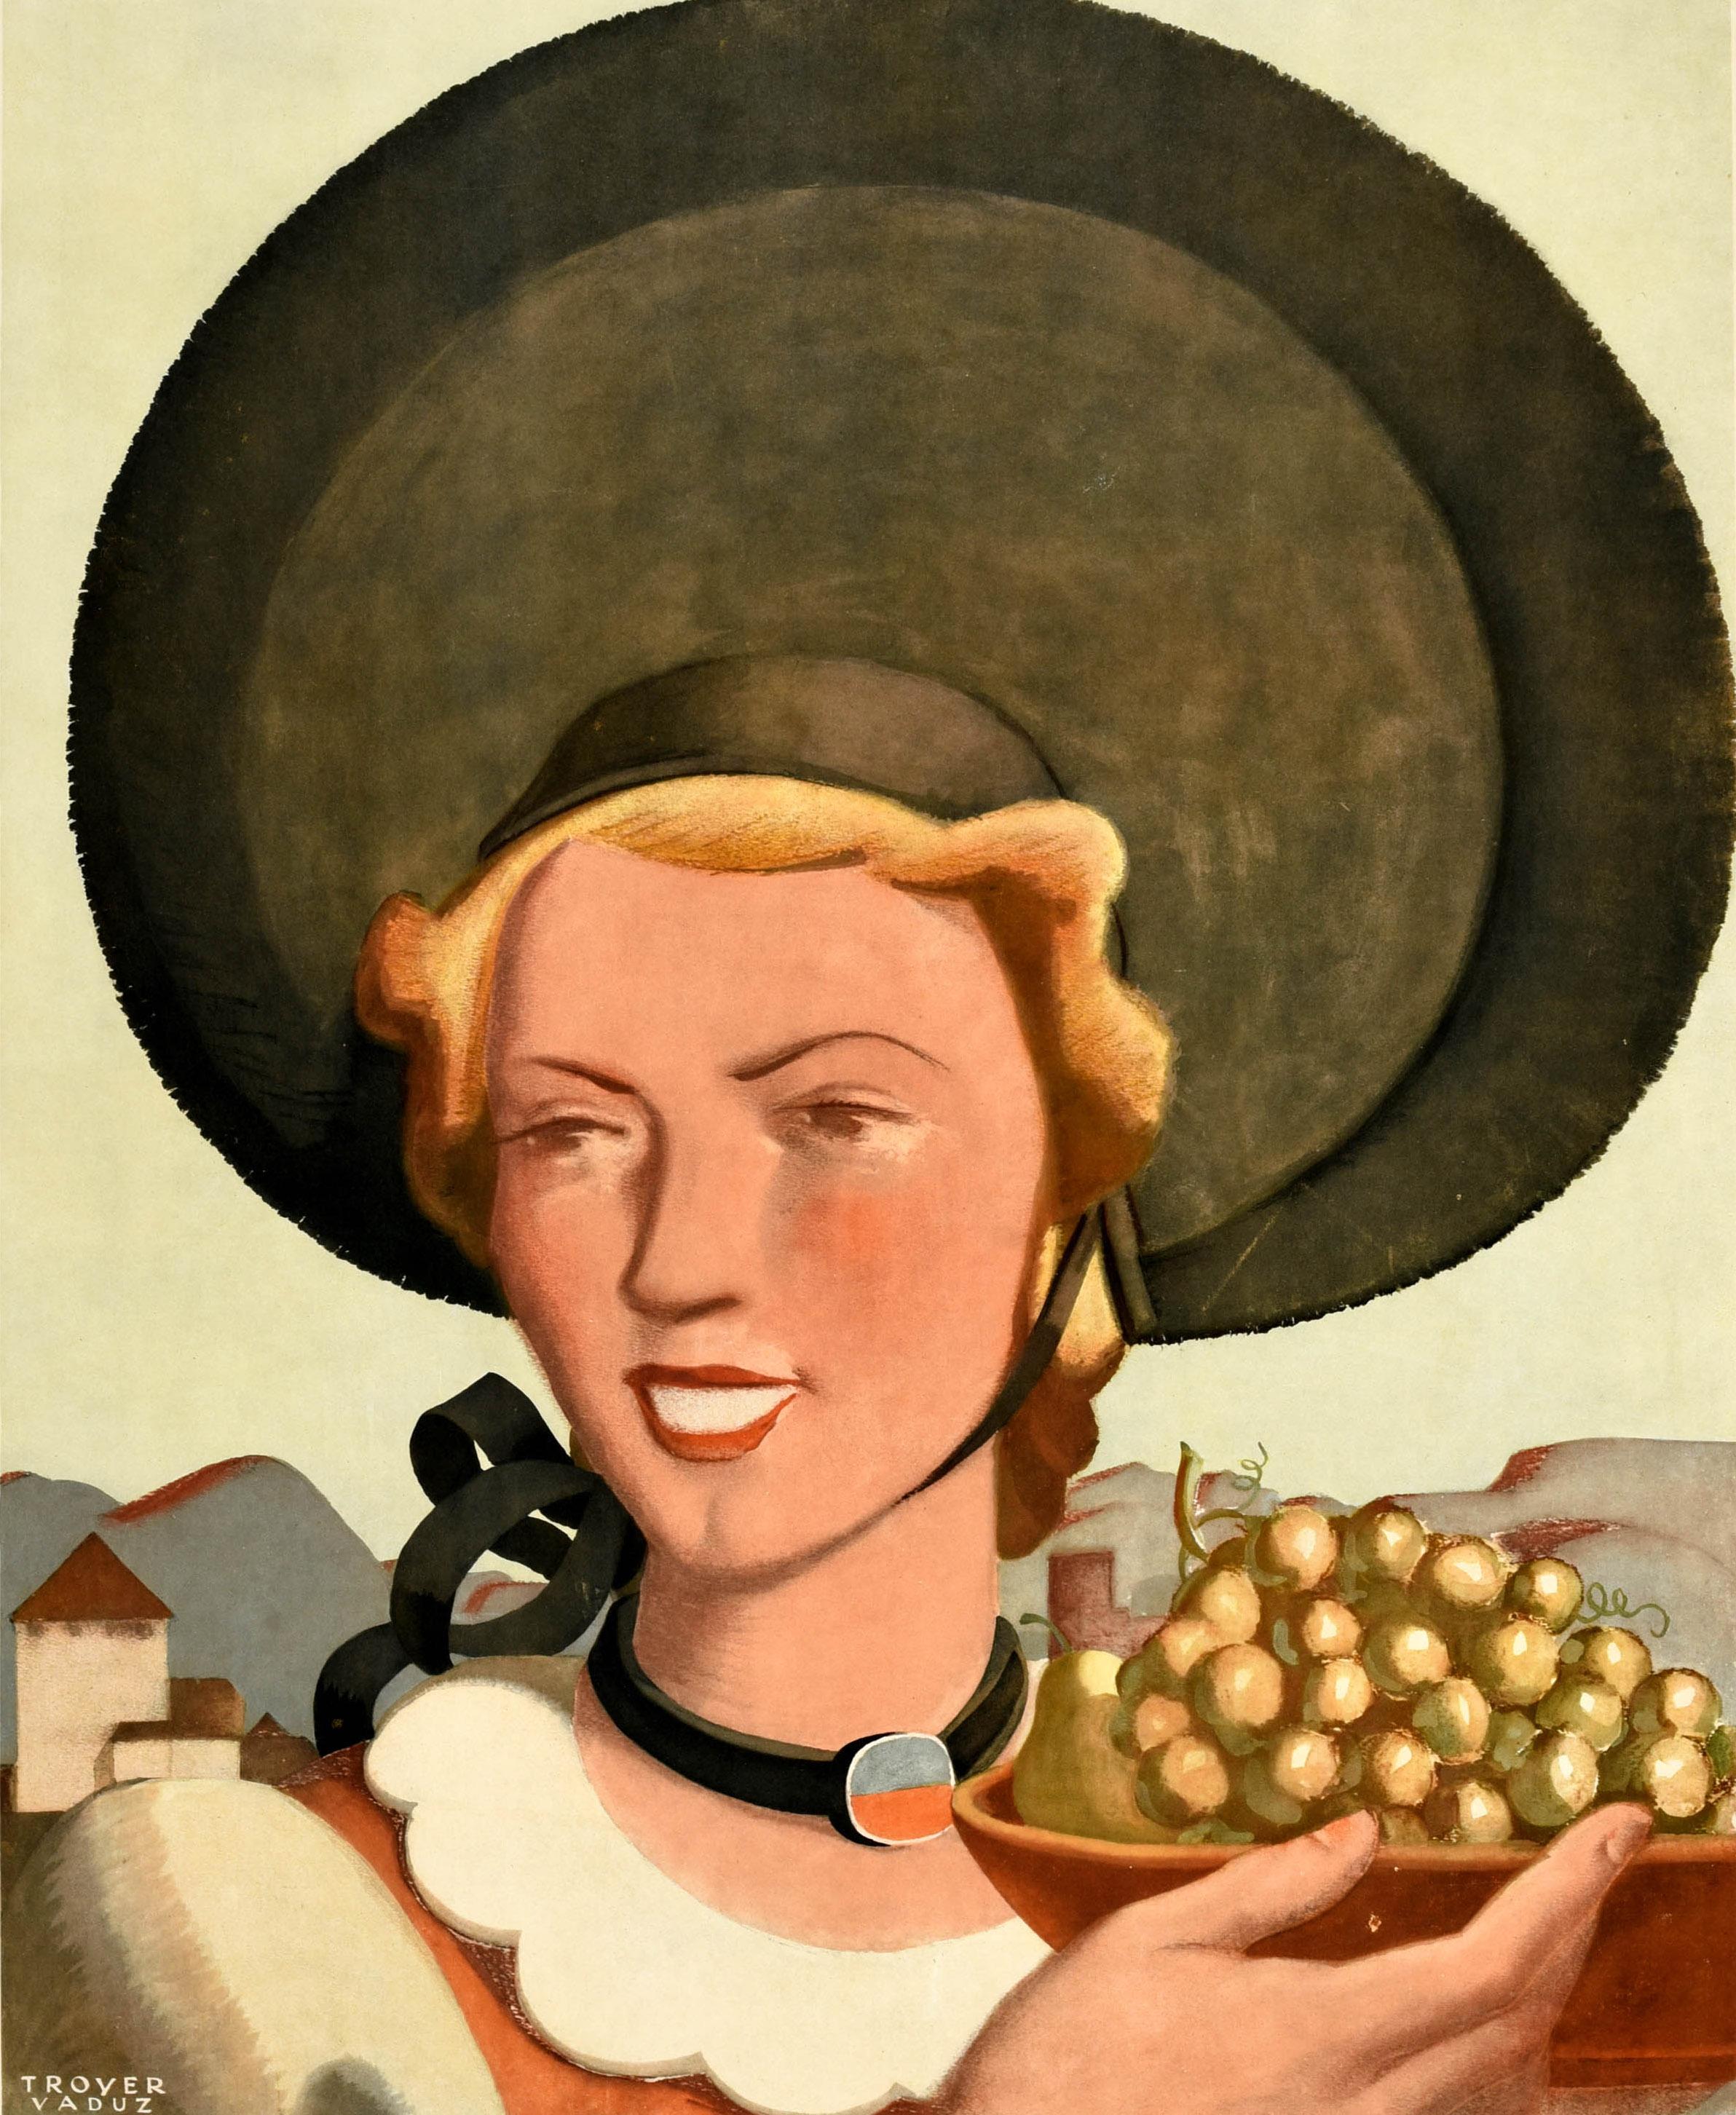 Original Vintage Travel Poster Principality Of Liechtenstein Johannes Troyer Art For Sale 1